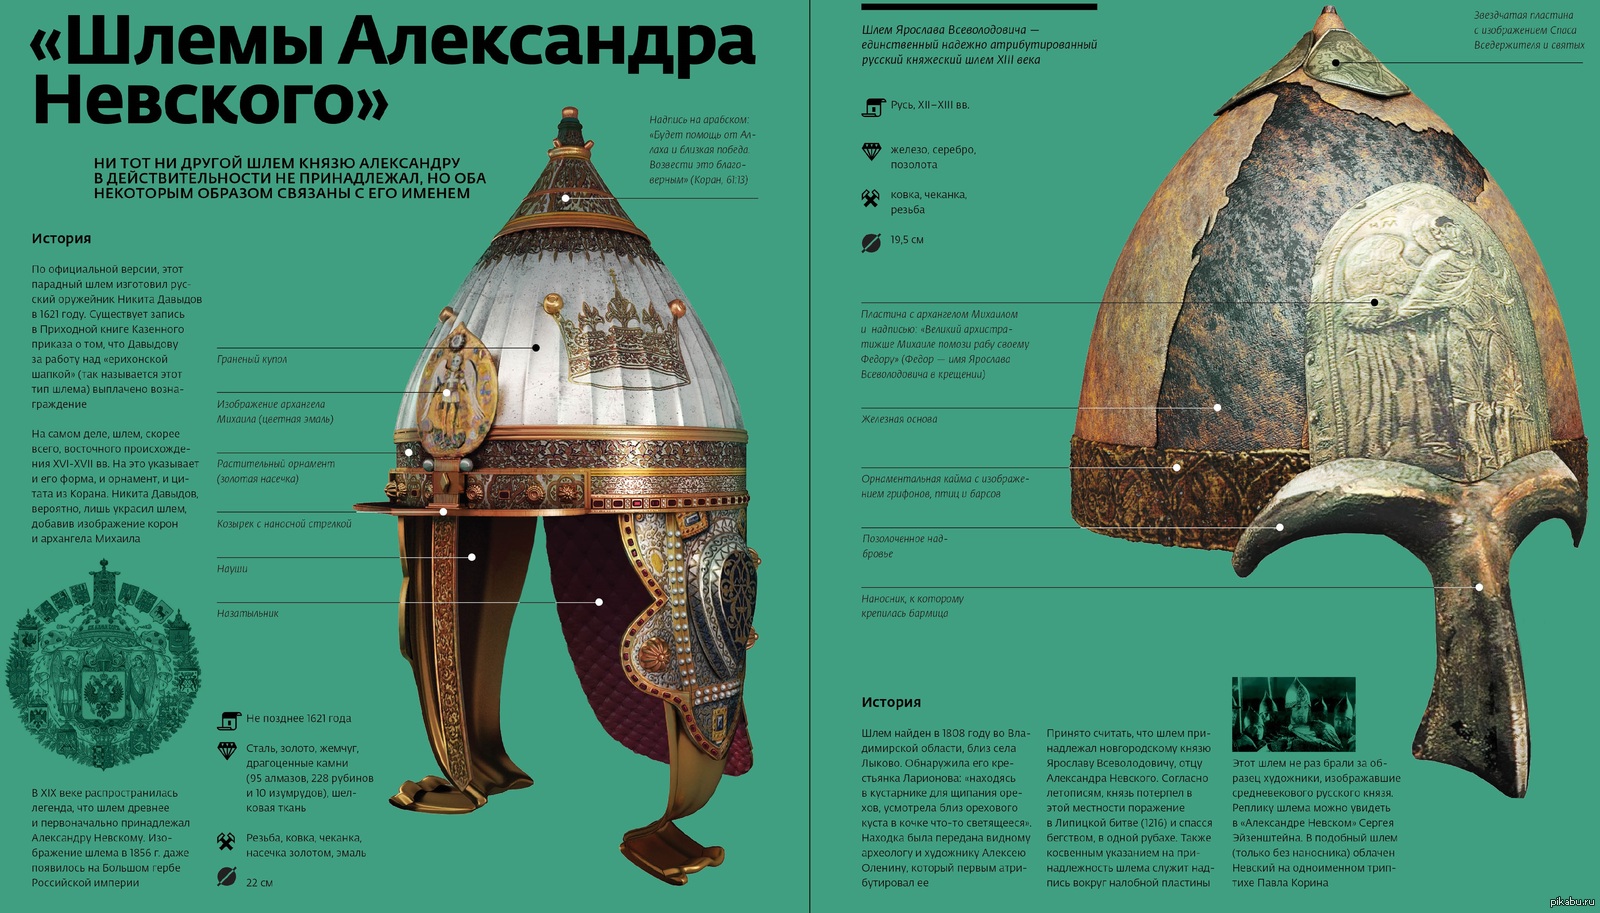 Шлем Александра Невского арабские надписи